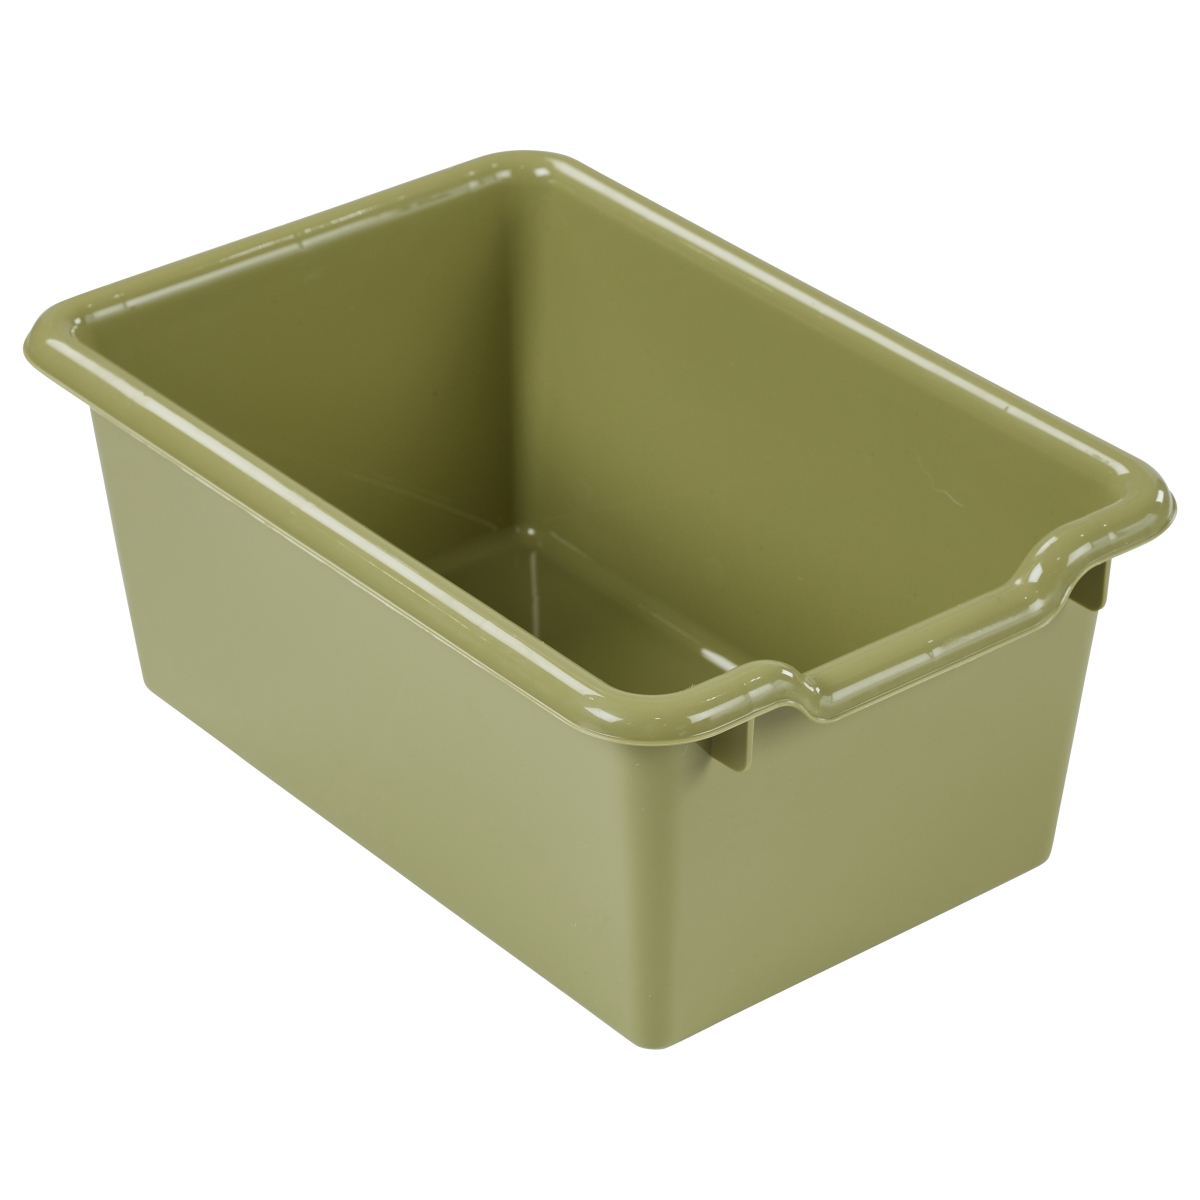 Elr-0482-fg 11.50 X 8 X 5 In. Scoop Front Storage Bins - Fern Green Case Pack Of 10